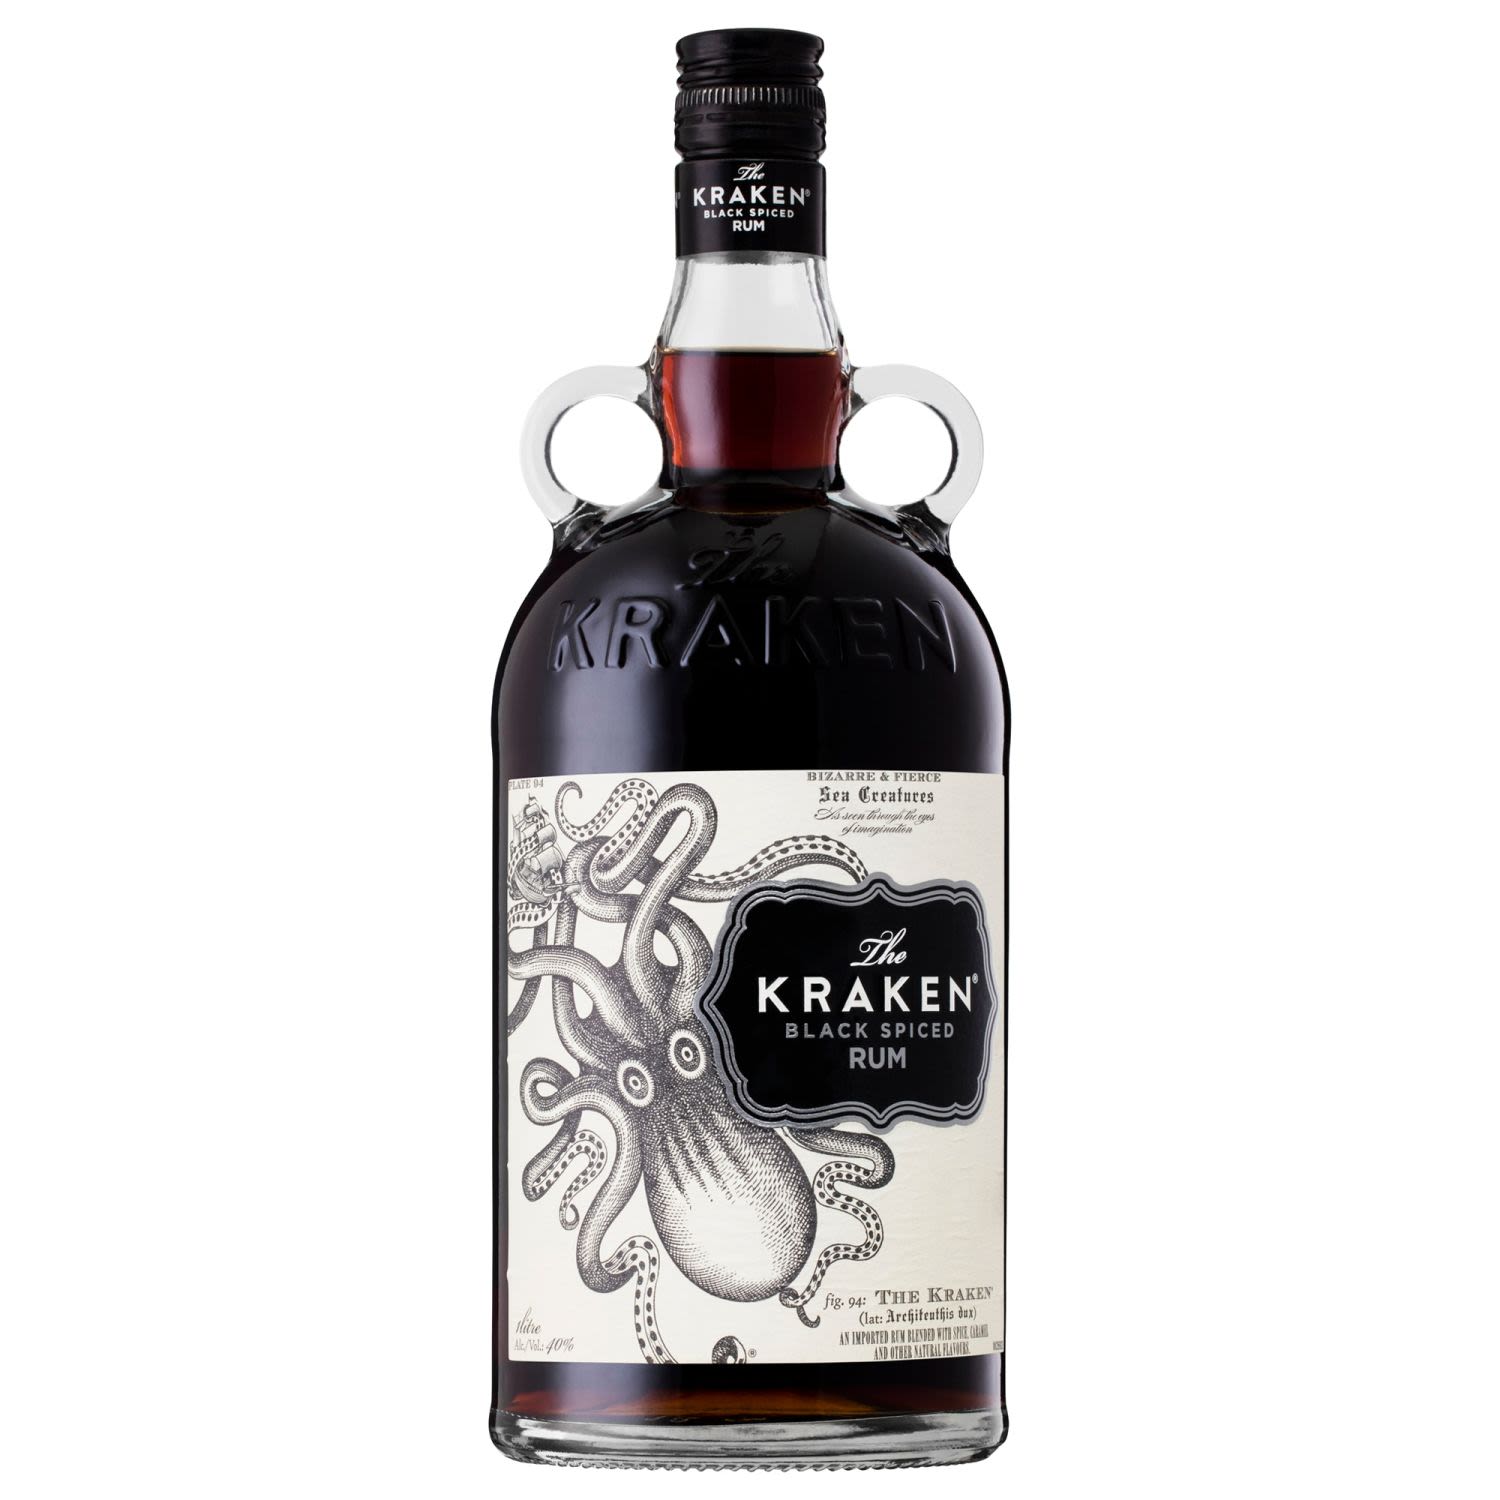 The Kraken Black Spiced Rum 1L Bottle